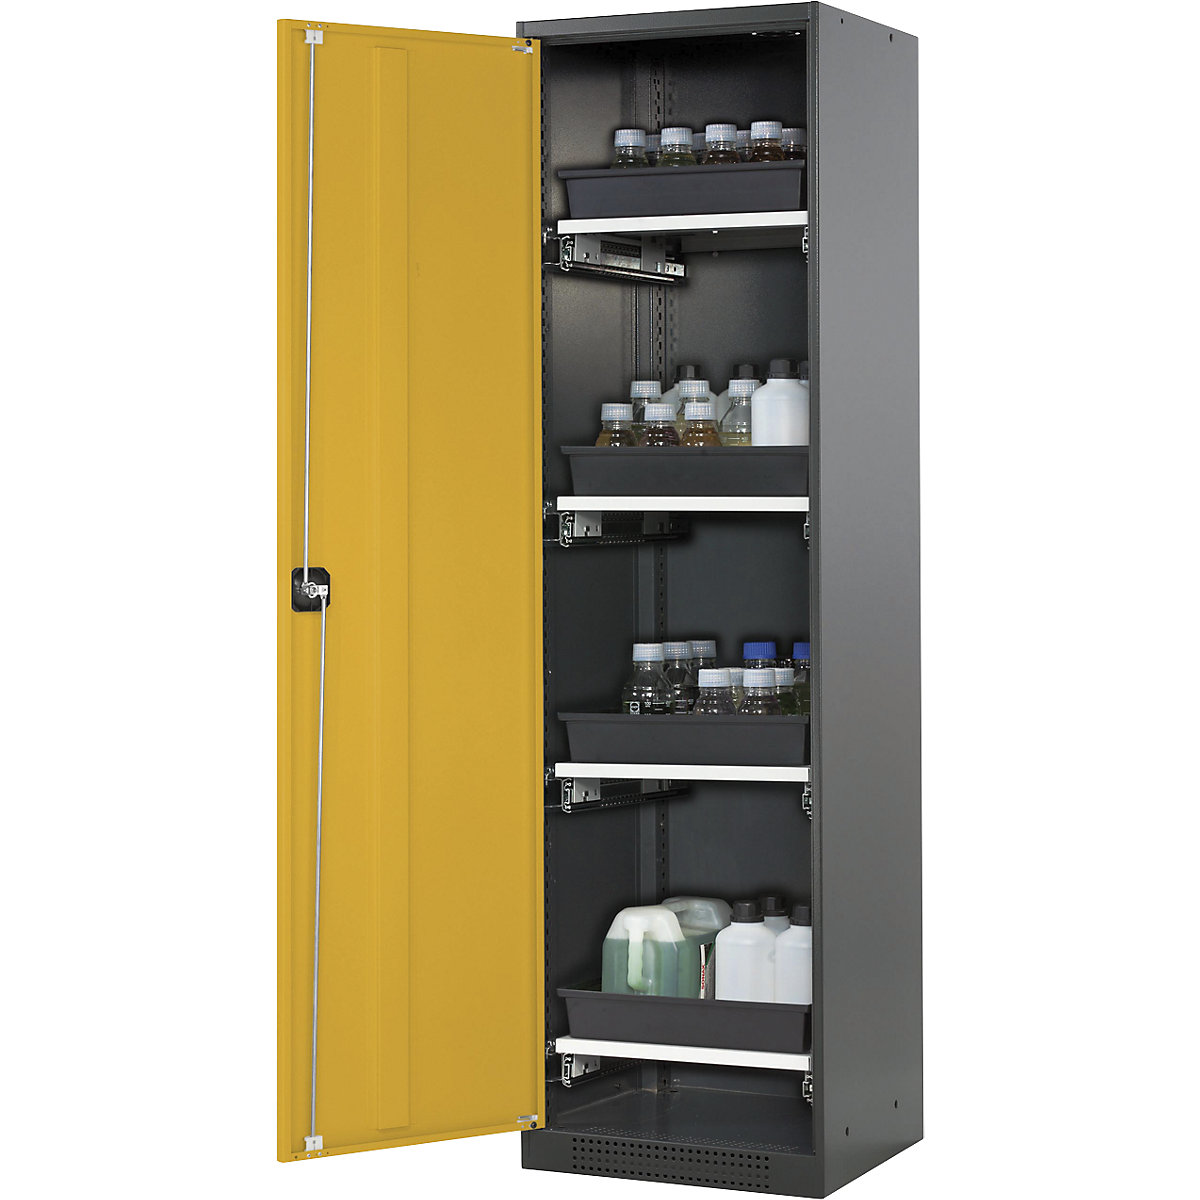 Laboratorijska omara za kemikalije – asecos, 1 vrata, visoka, 4 izvlečni deli, brez kontrolnega okenca, rumena-4